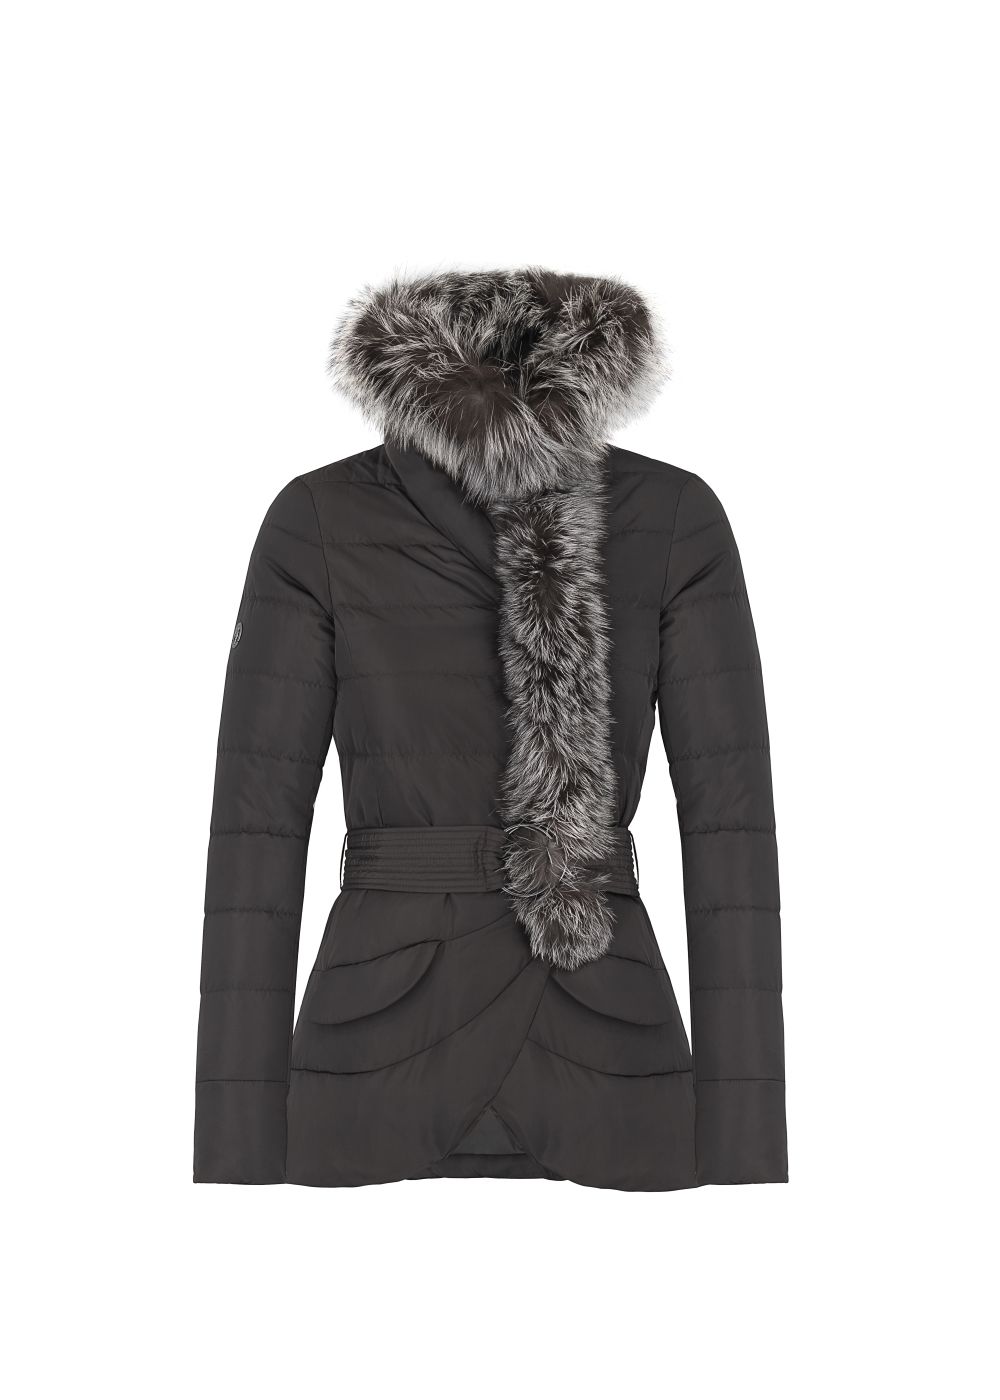 Fur Hood Wind Coat Ladies Winter Down Jacket